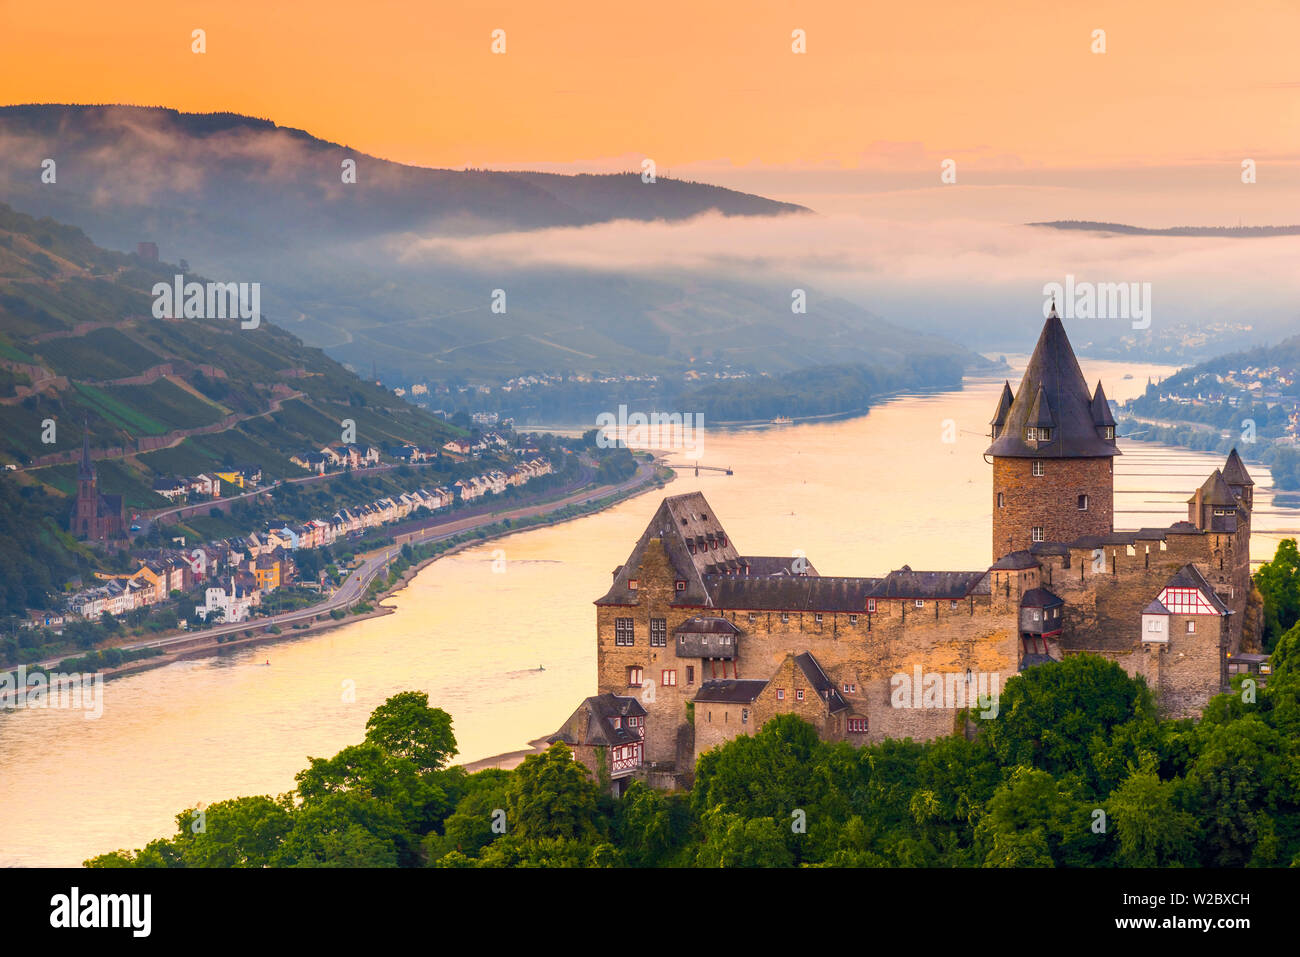 Germany, Rhineland Palatinate, Bacharach, Burg Stahleck (Stahleck Castle), River Rhine Stock Photo